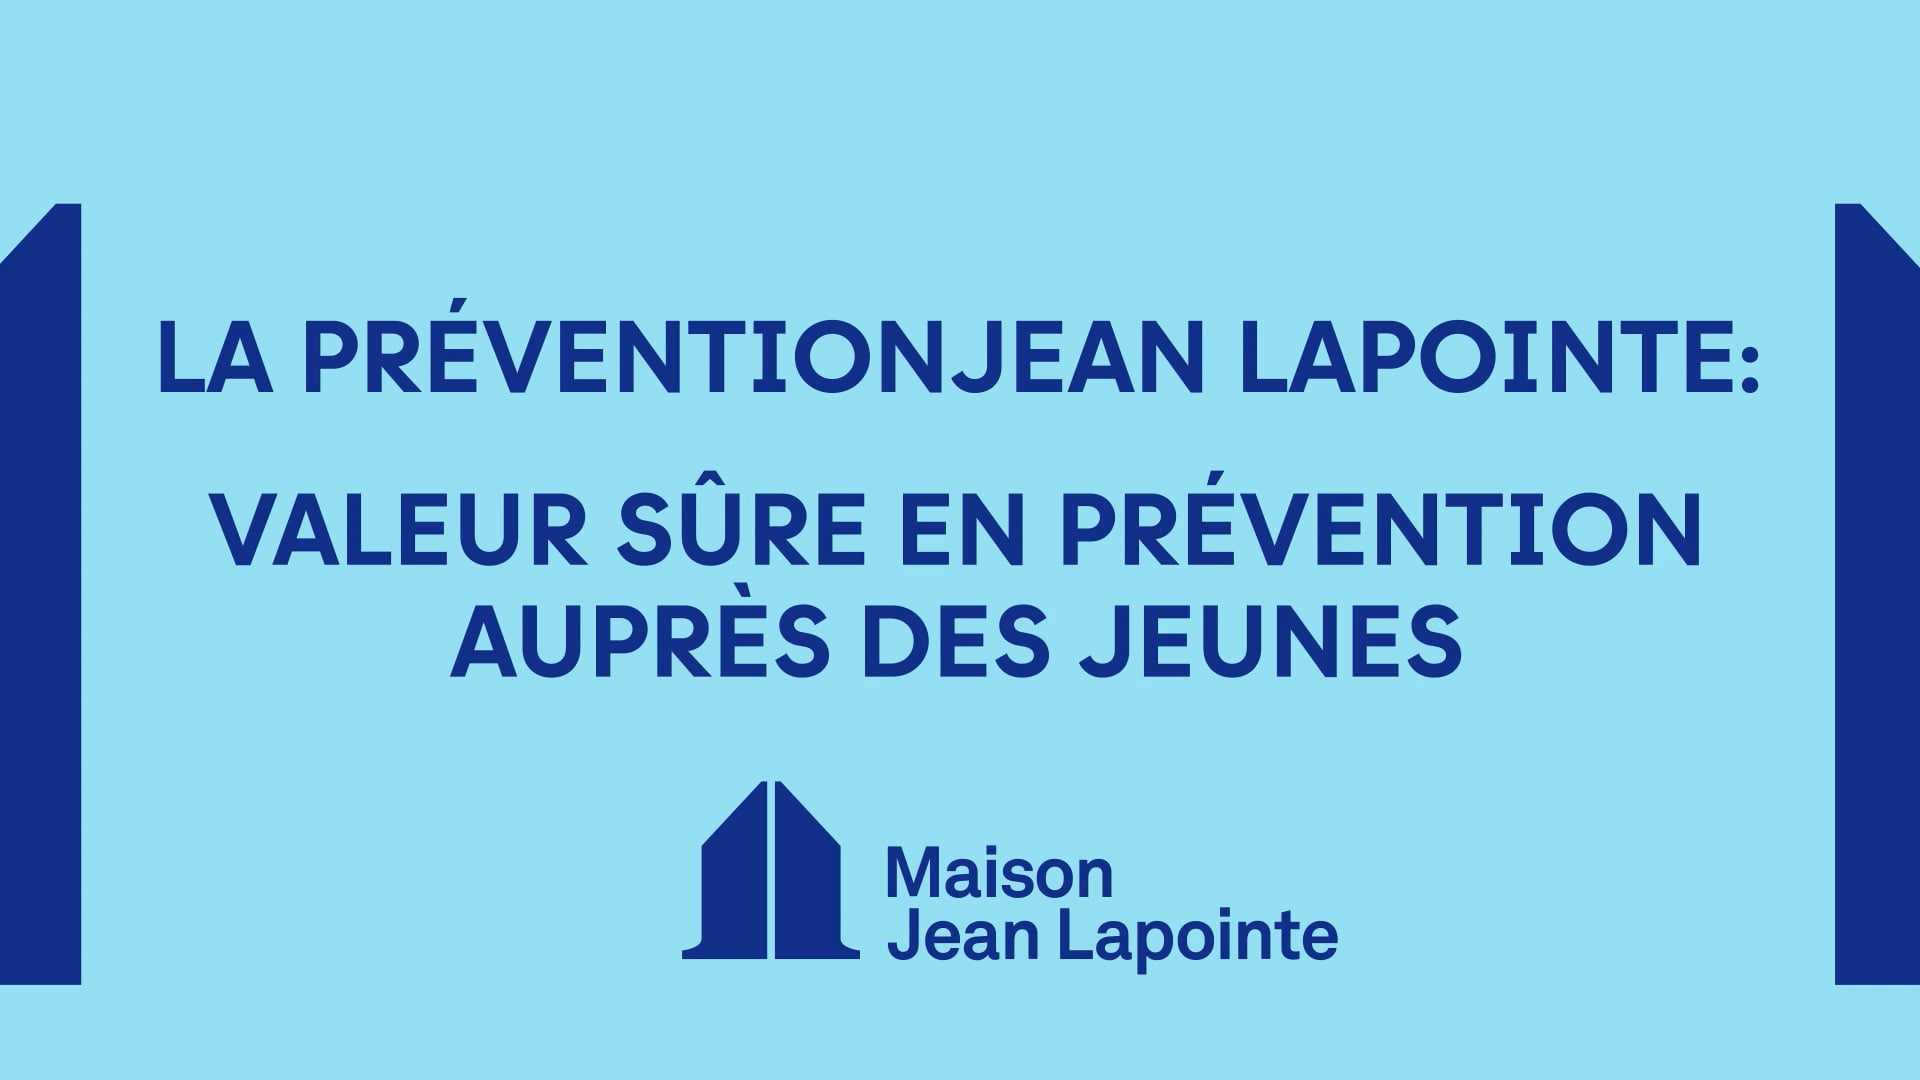 Maison Jean Lapointe - Les ateliers de prévention